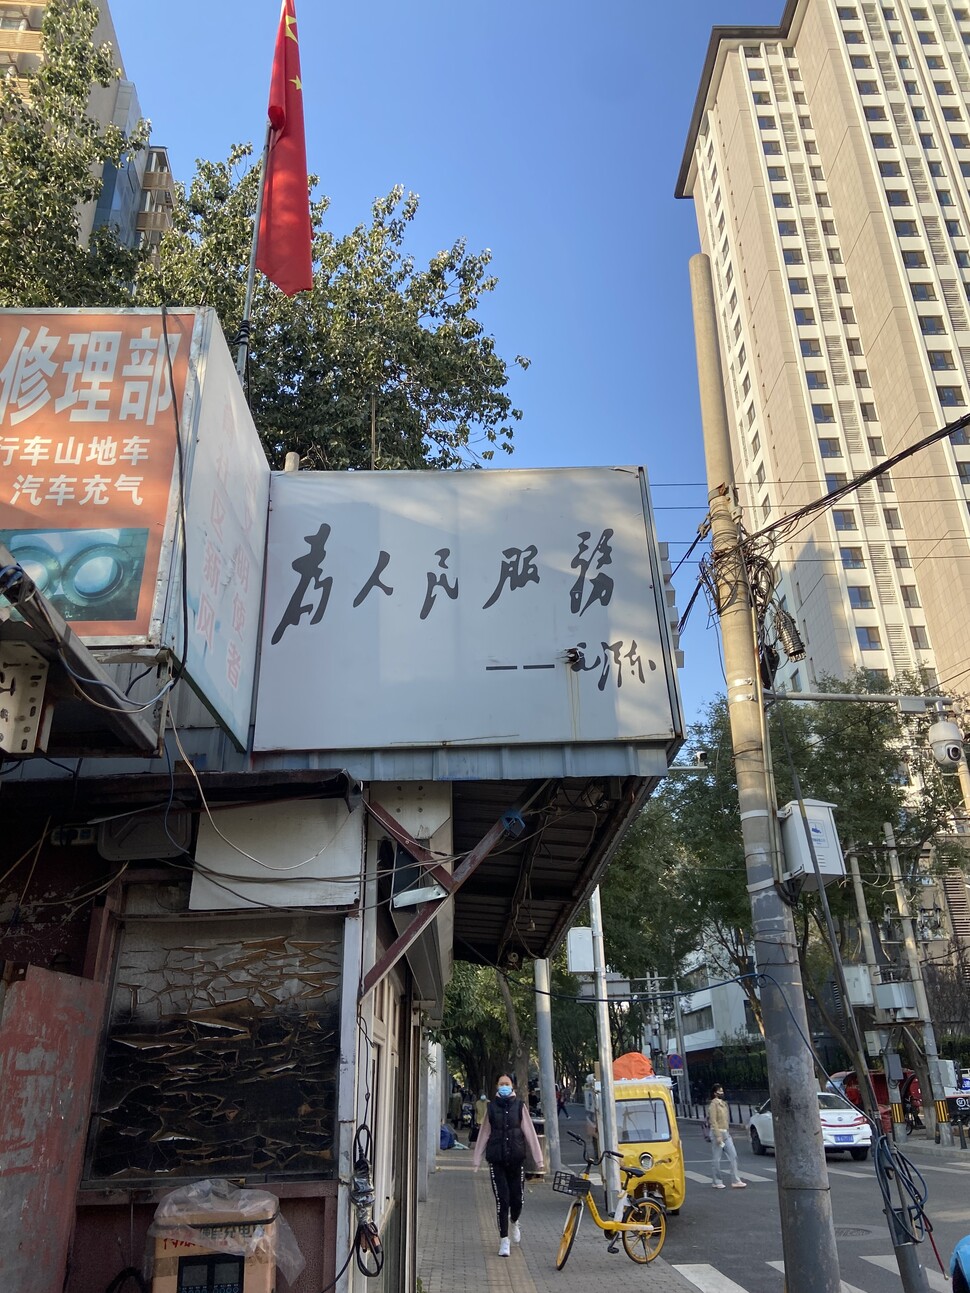 중국 베이징 웨이궁춘 거리 열쇠 가게에 마오쩌둥의 말 ‘인민을 위하여 복무하라’가 적혀 있다.